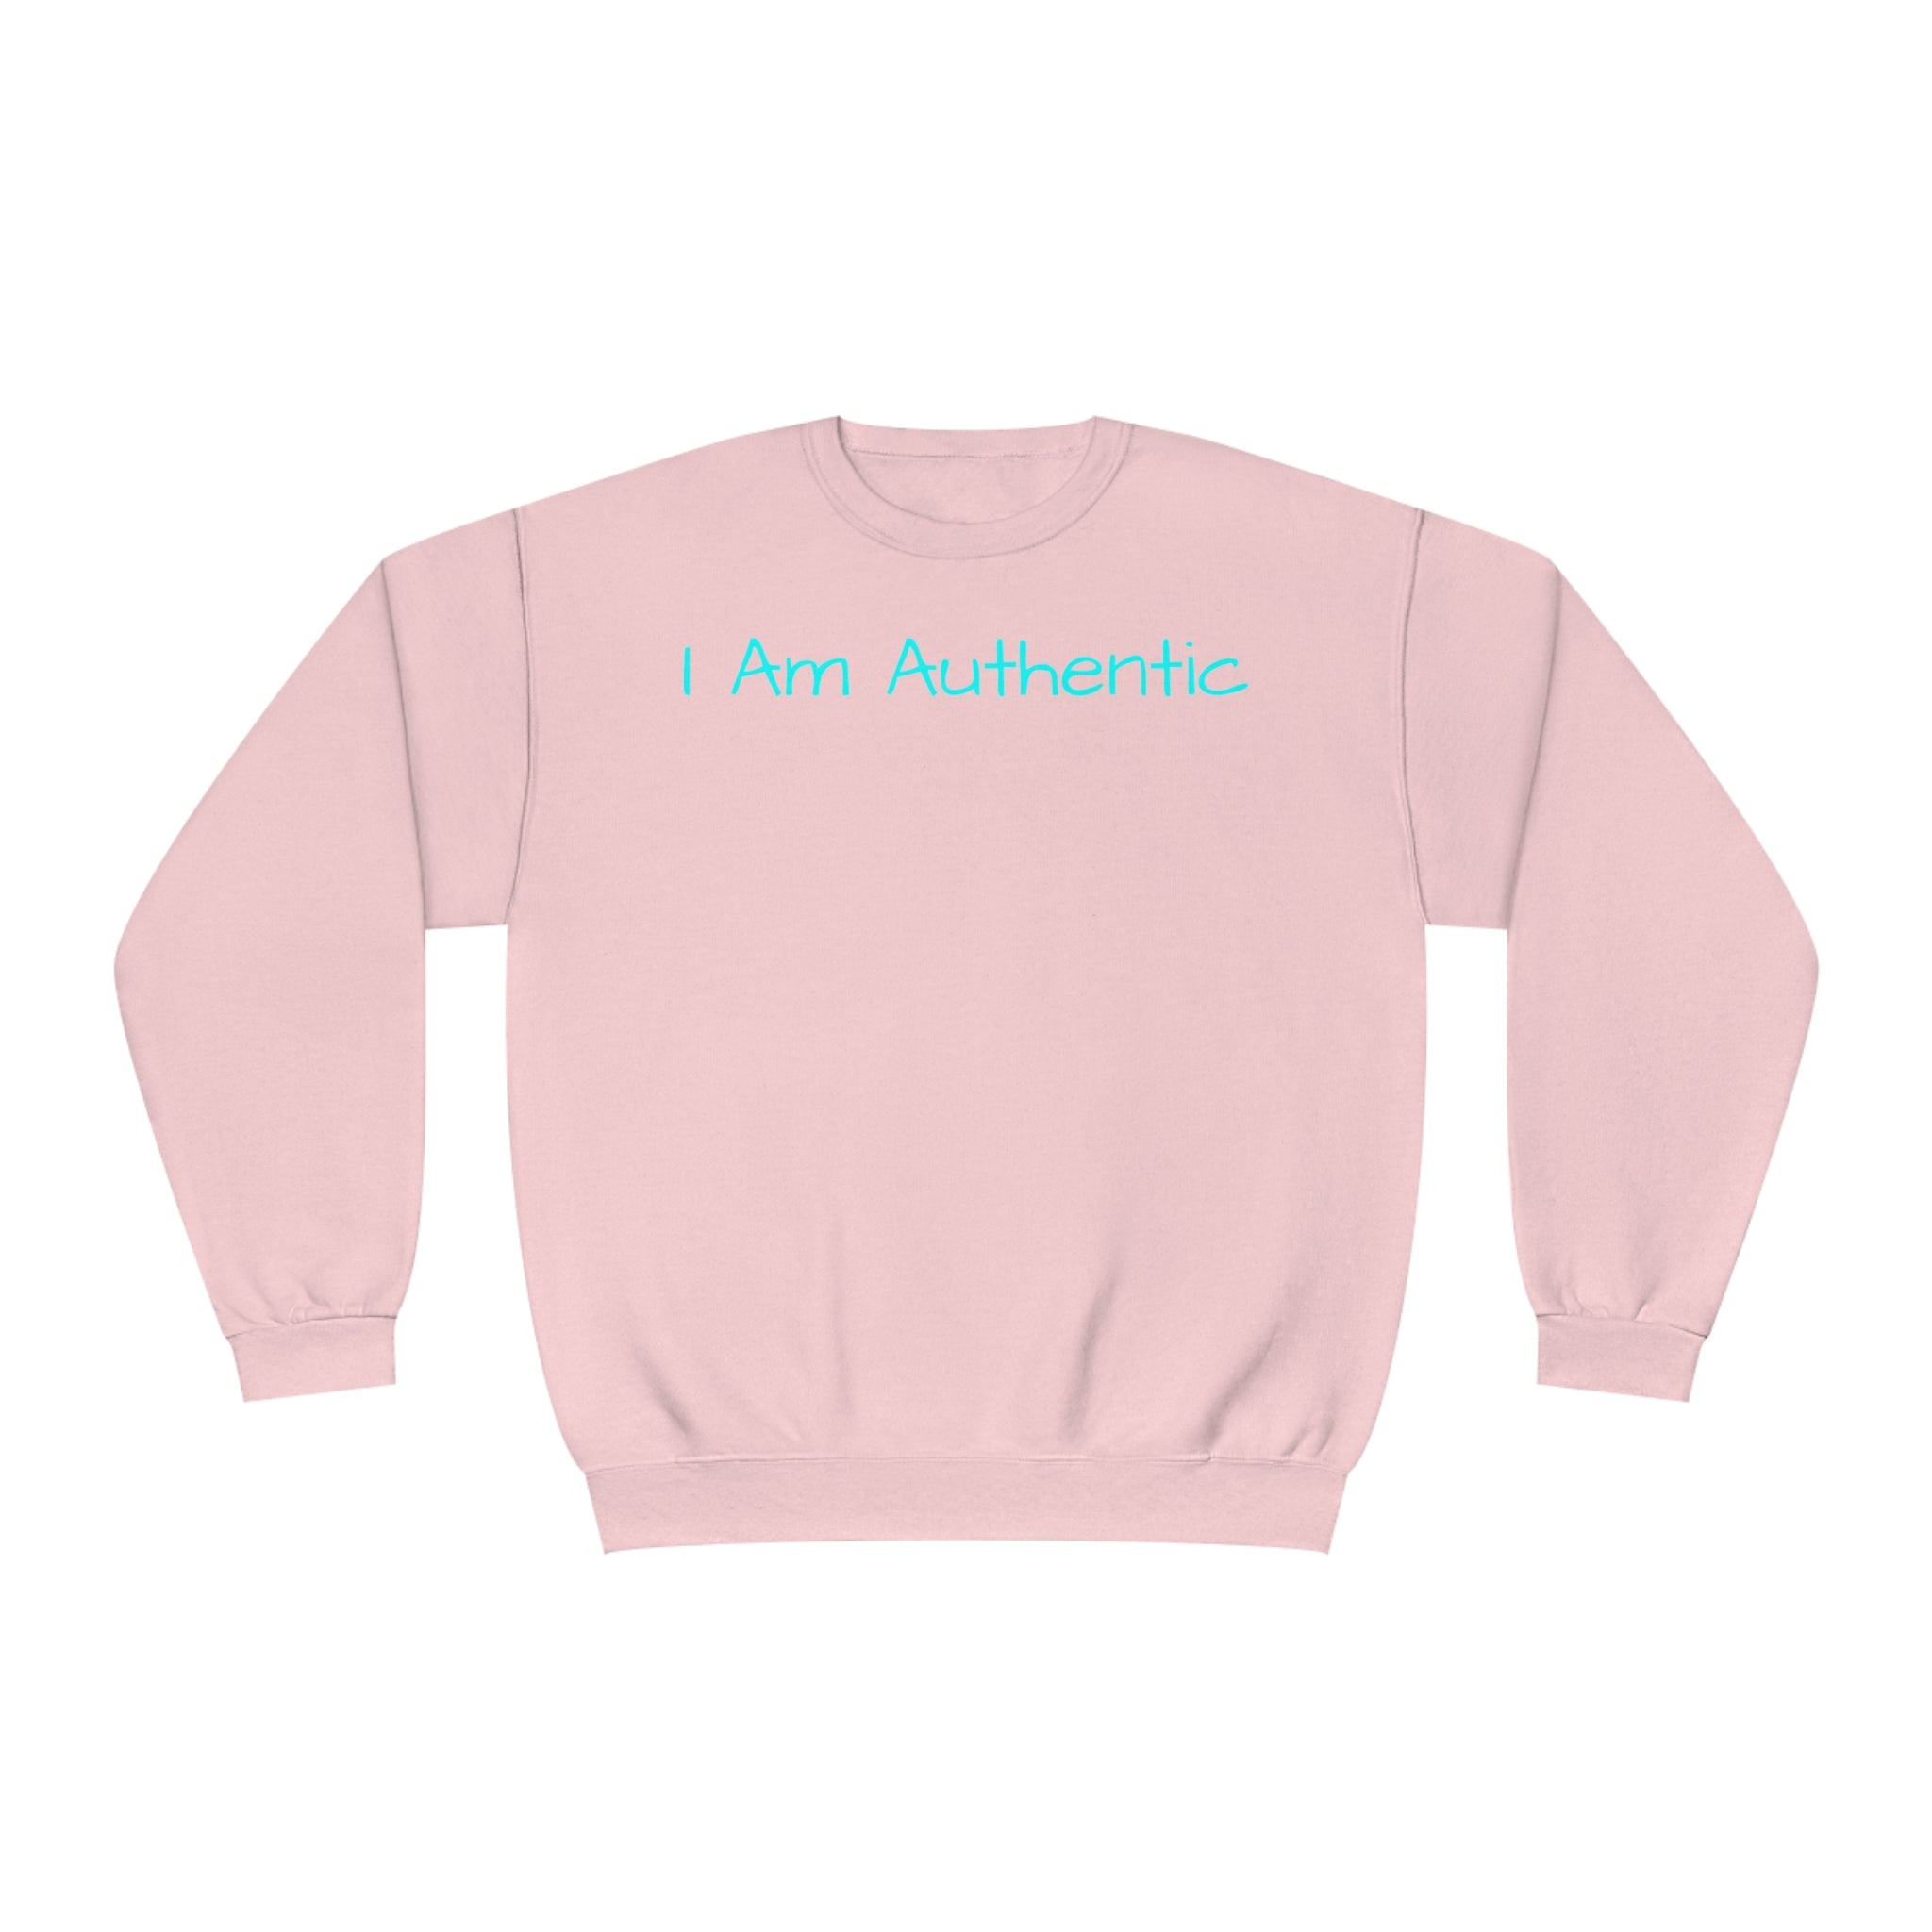 I Am Authentic Fleece Sweatshirt: Comfort & Positivity Sandstone Comfy Sweater Cozy Sweatshirt Crewneck Sweatshirt Fleece Pullover Graphic Sweatshirt Men's Sweatshirt Streatwear Sweatshirt Warm Outerwear Women's Sweatshirt Sweatshirt 1267816726191477932_2048 Printify